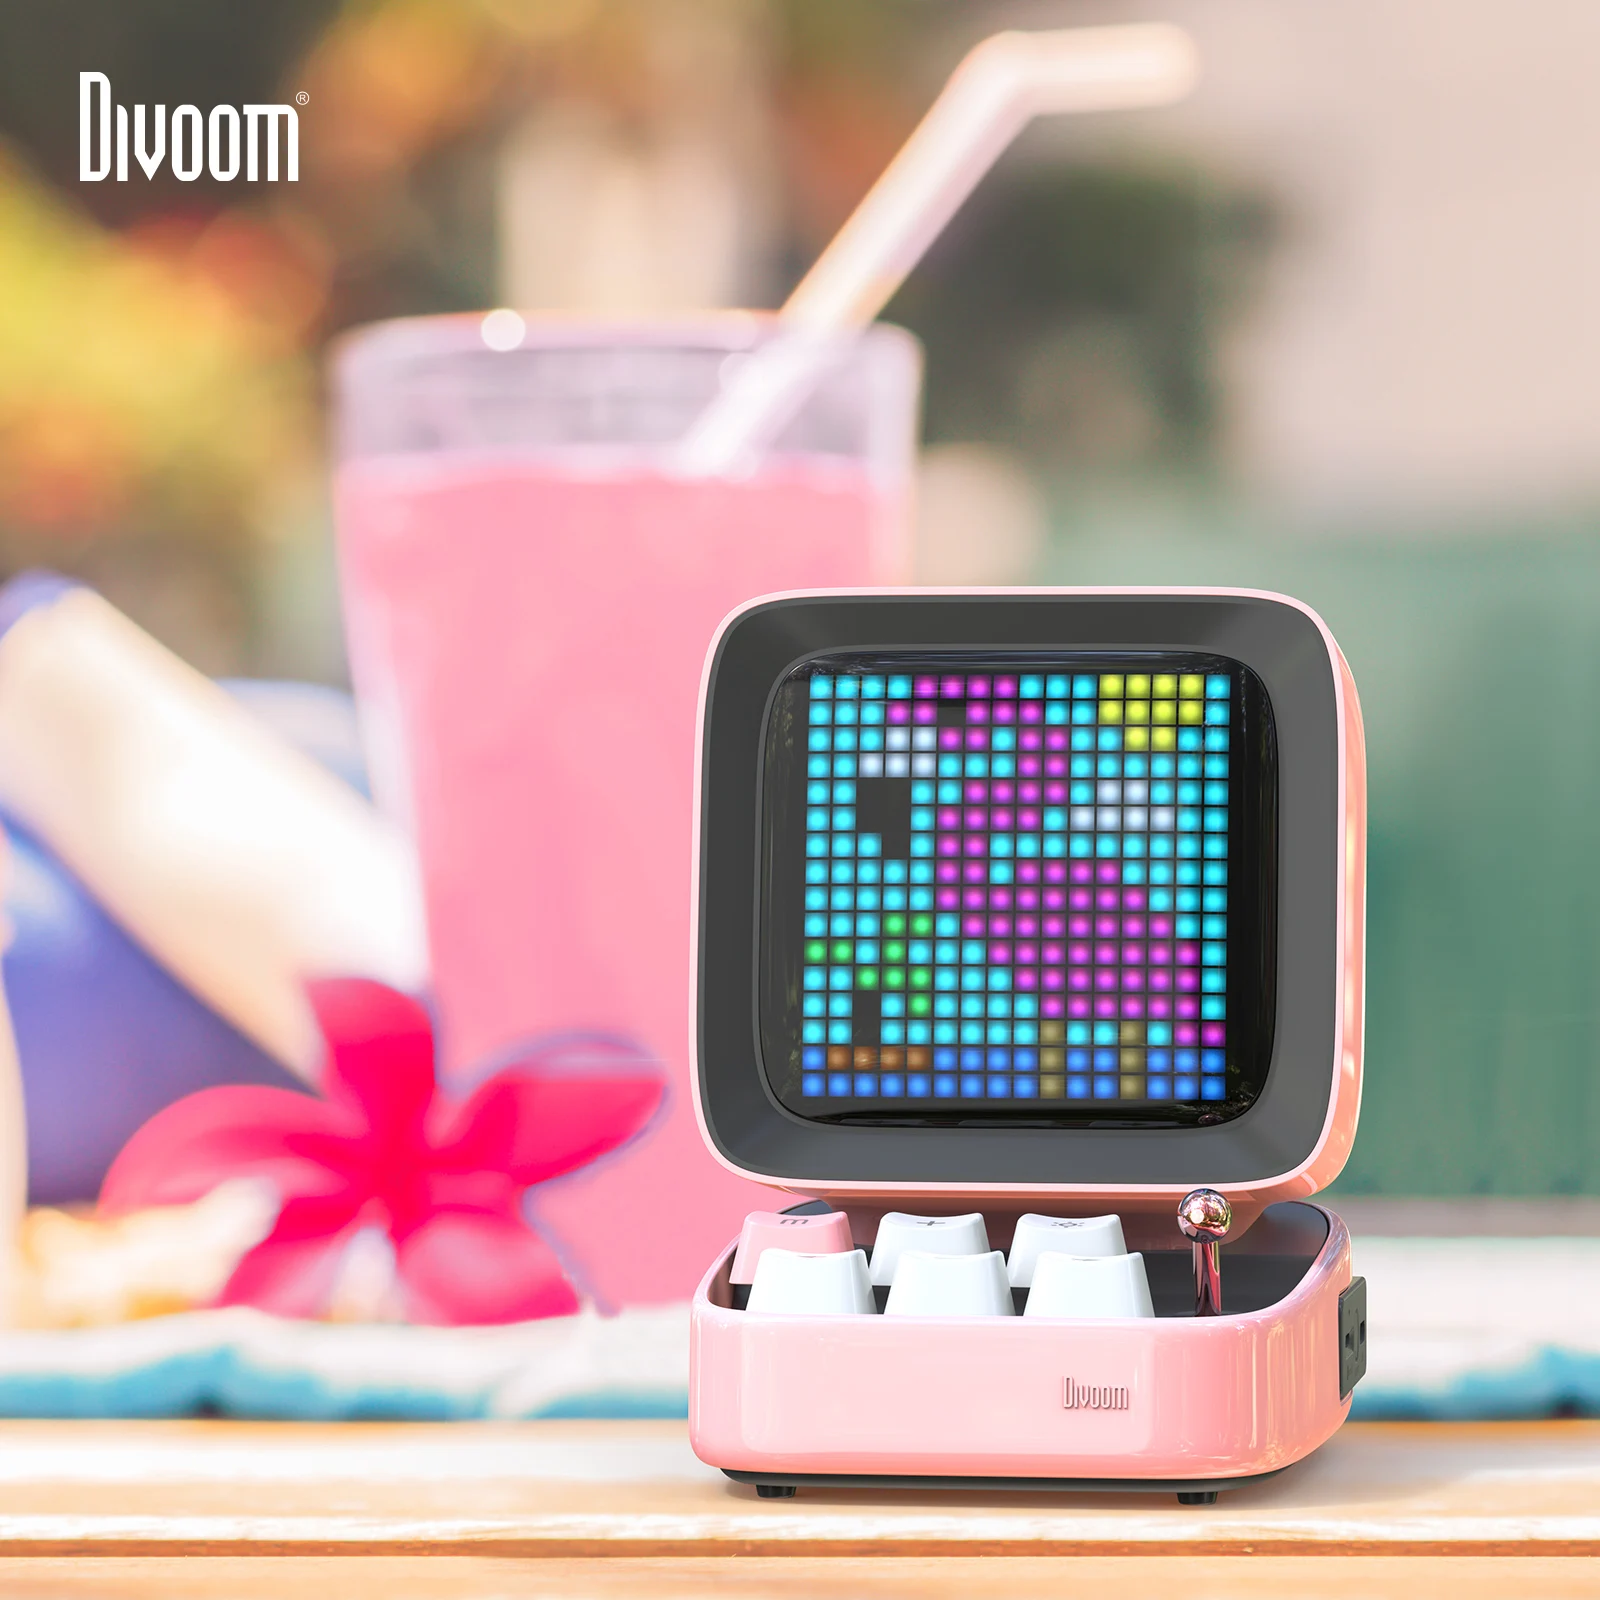 

Divoom Ditoo Ретро пиксельный художественный Bluetooth портативный динамик будильник DIY светодиодный дисплей доска, подарок на Хэллоуин украшение дл...